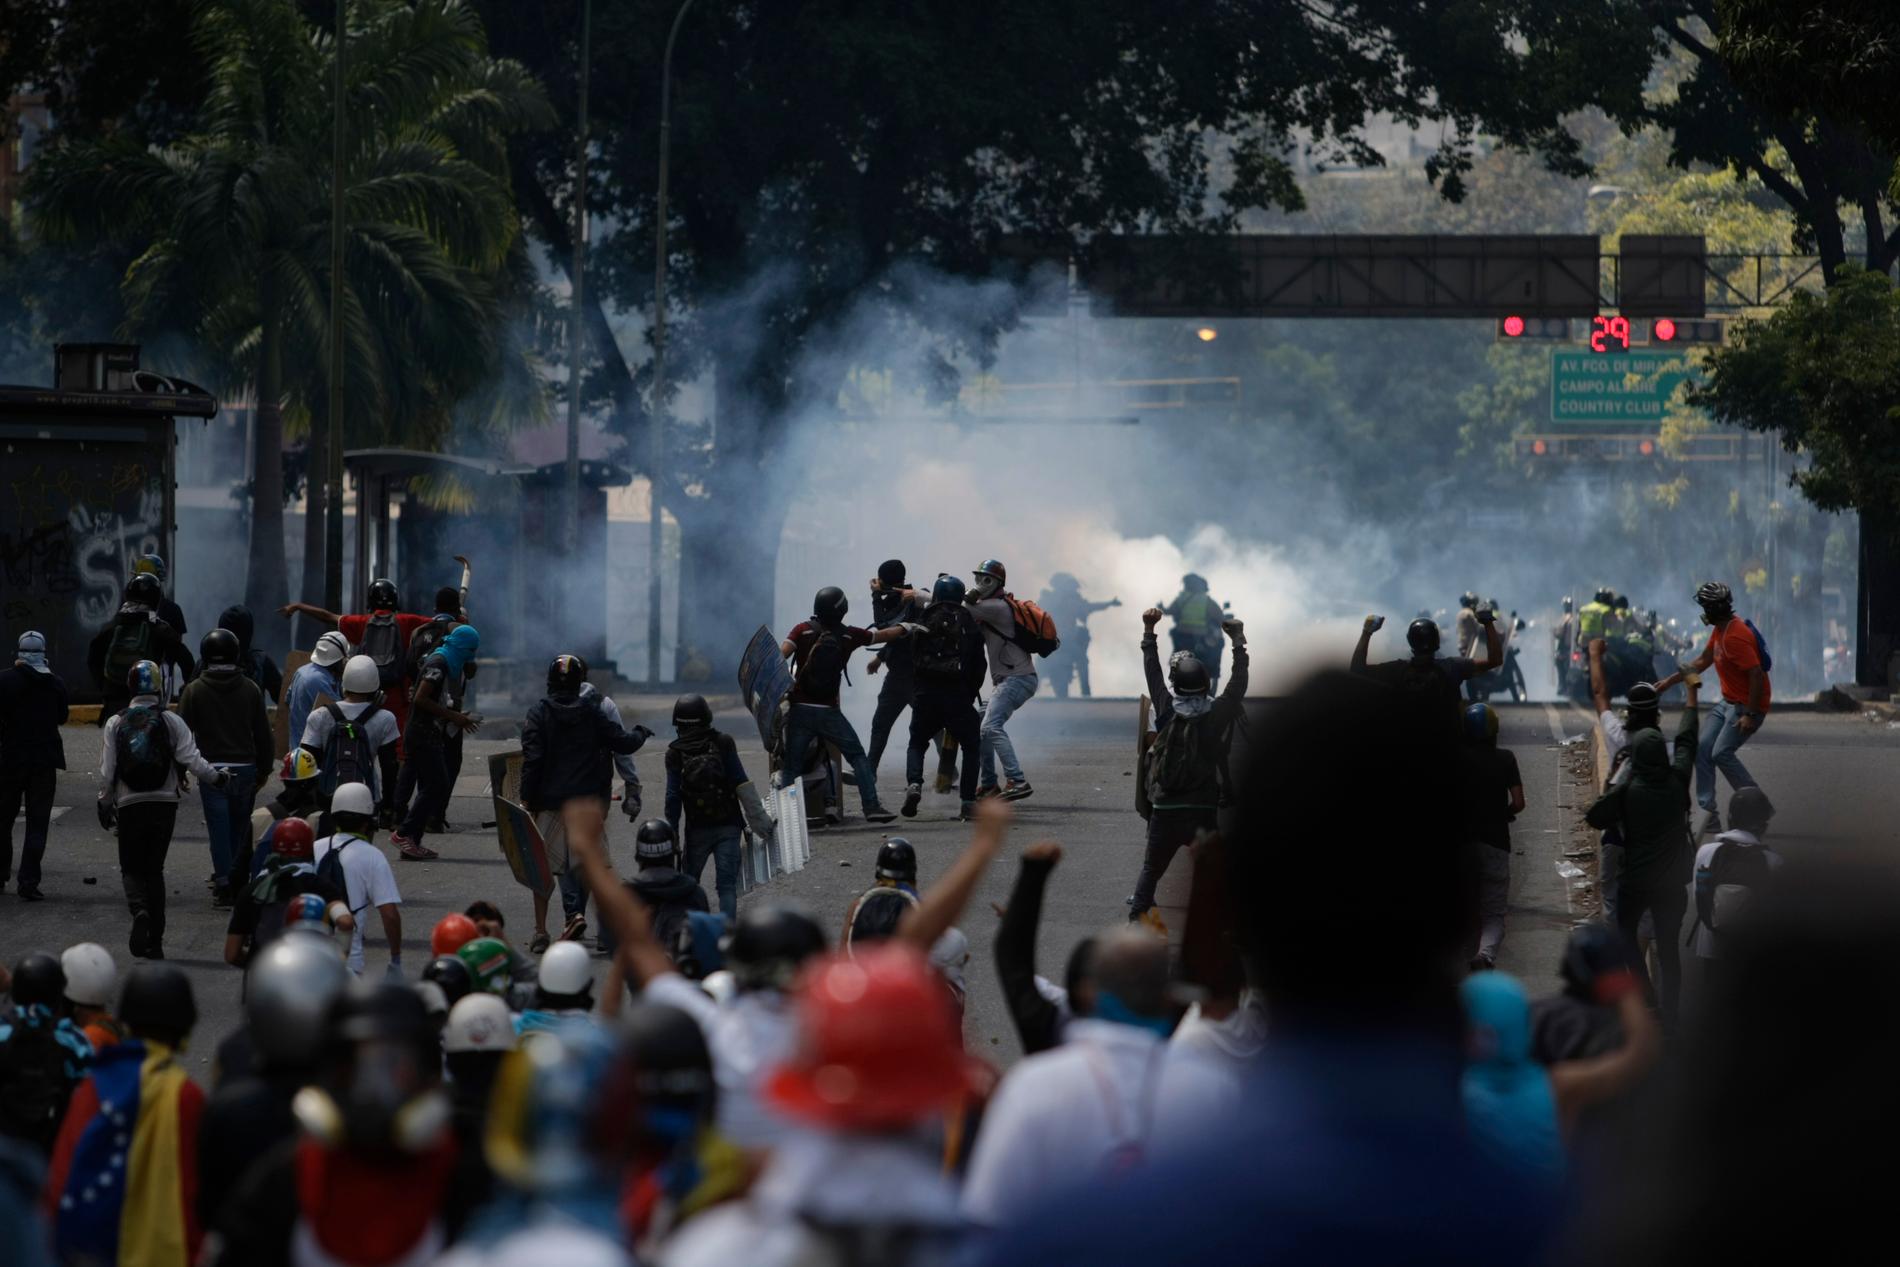 Många dog i vårens sammandrabbningar och protester i Venezuela. Den 29 maj drabbade polis samman med demonstranter under en marsch i protest mot president Maduro. Oppositionen kräver nytt presidentval och att politiska fångar släpps fria.